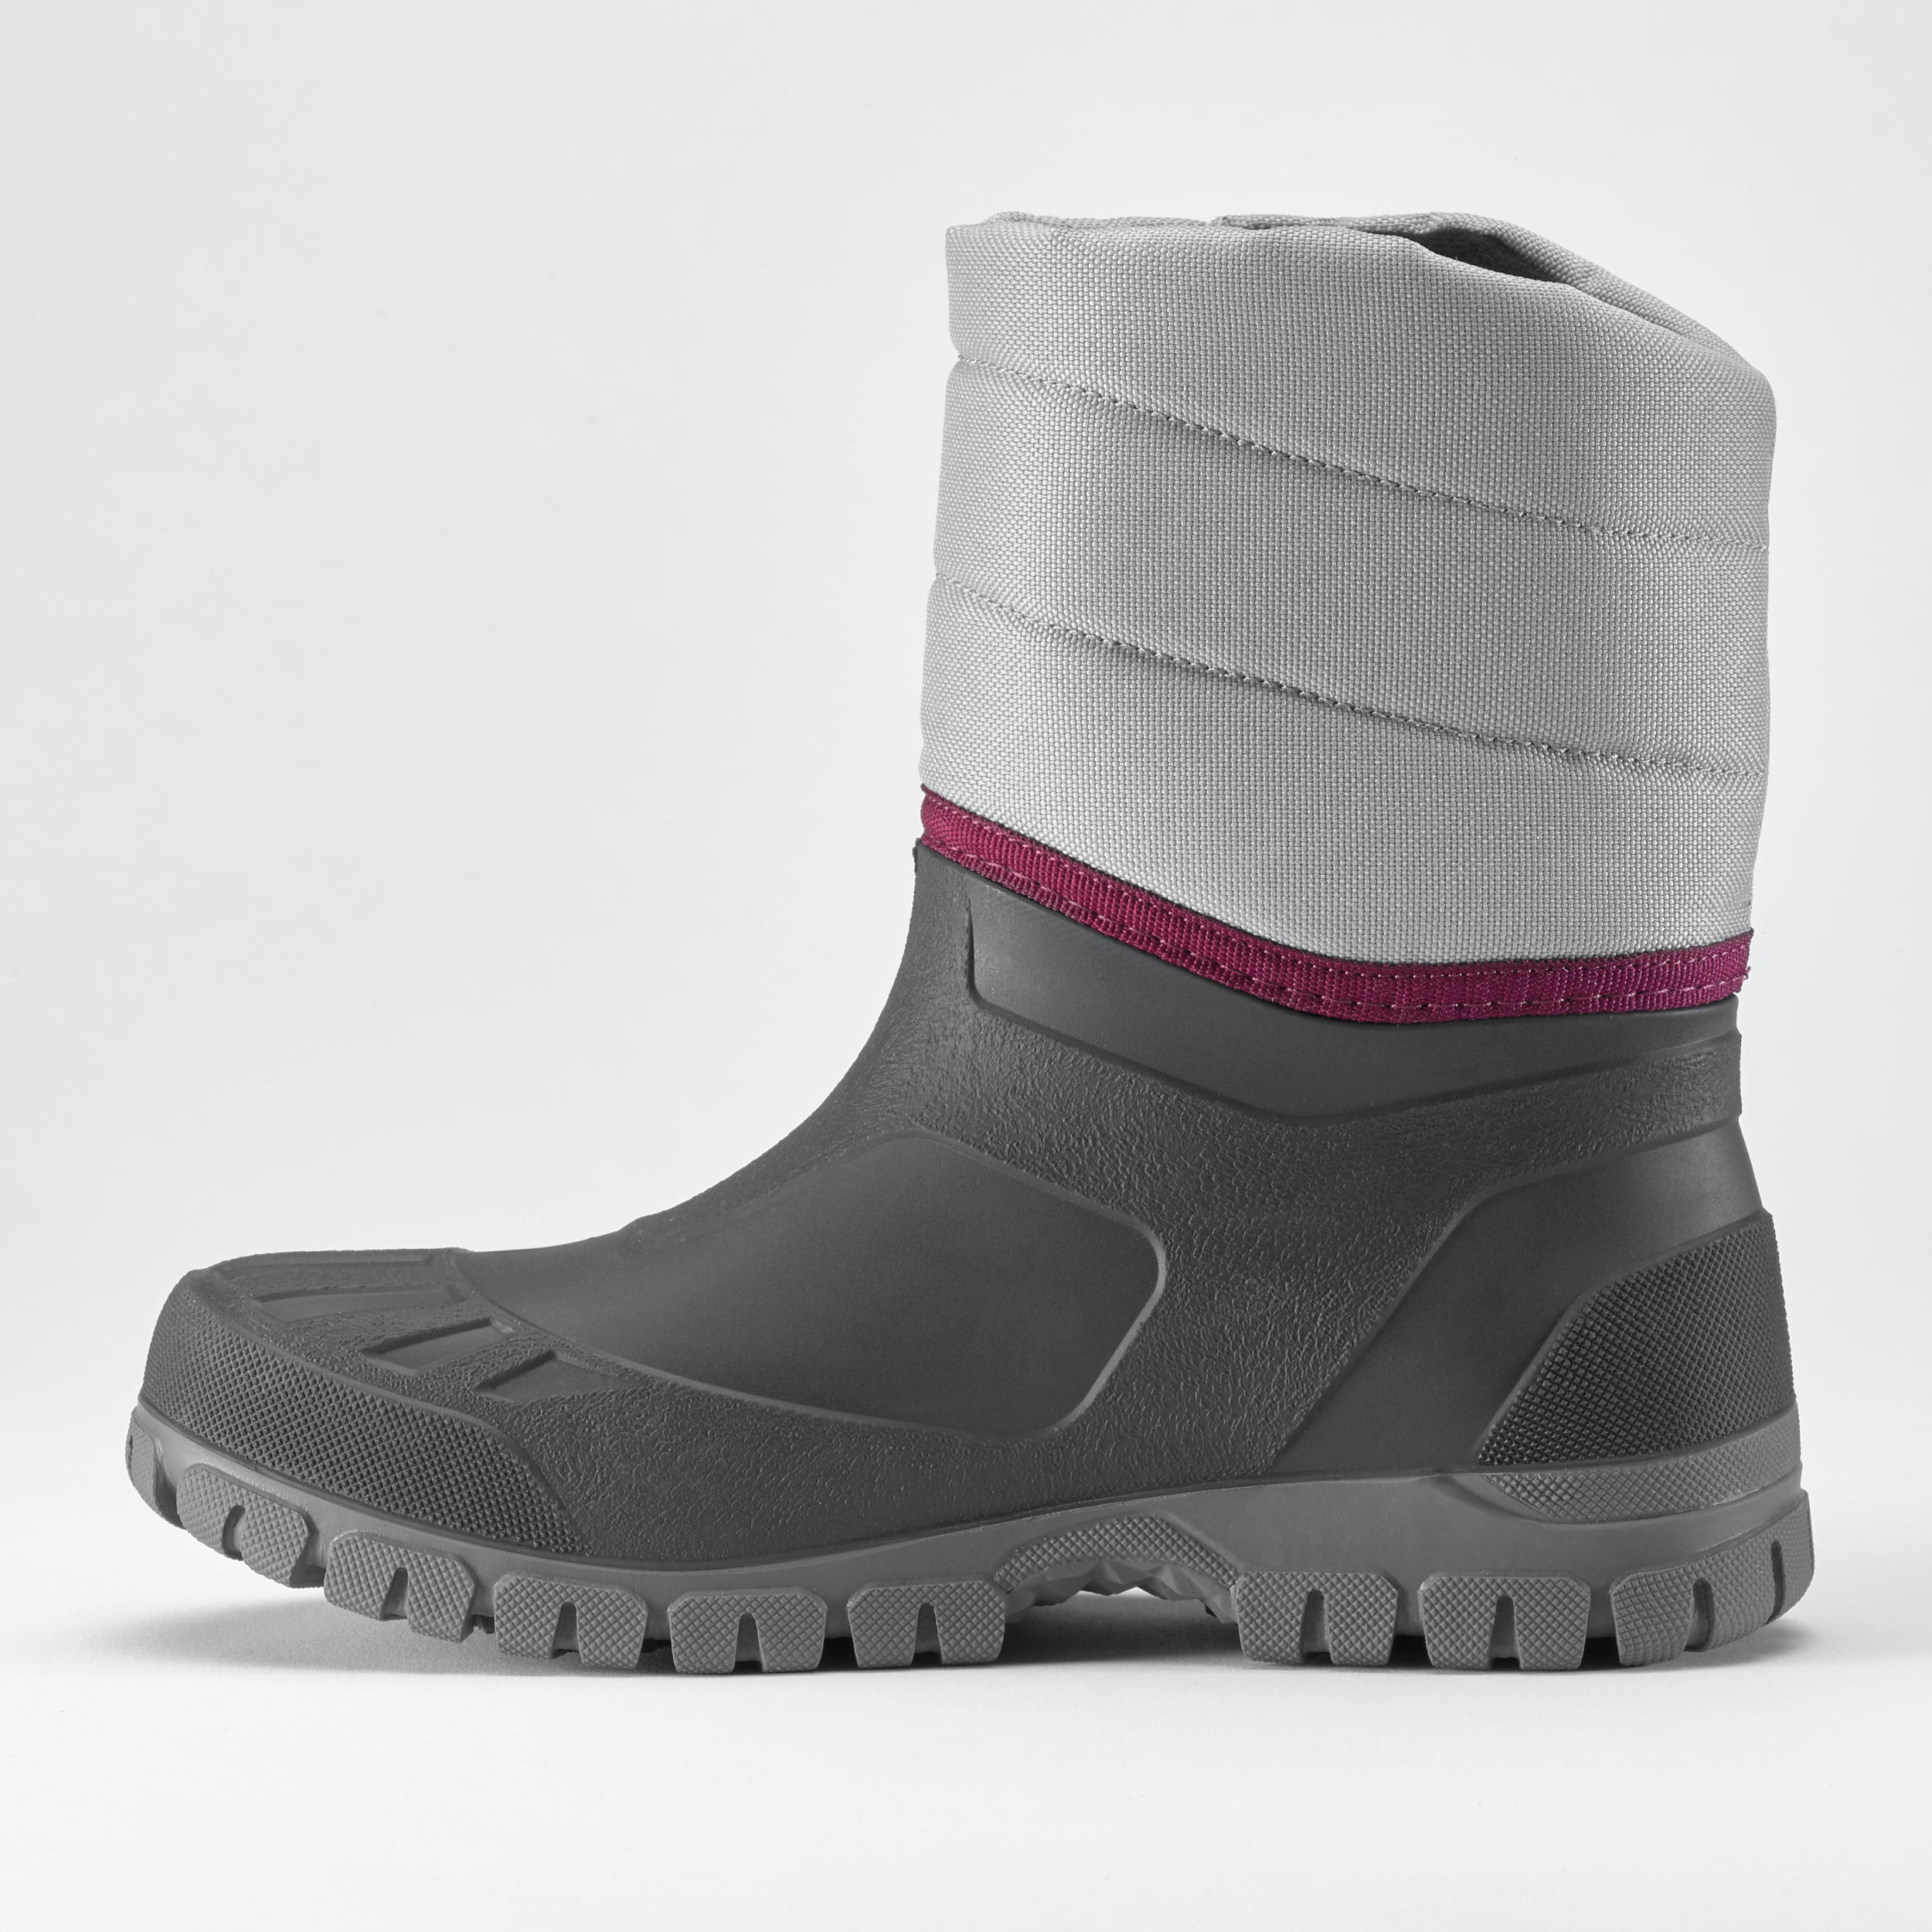 Women's Winter Hiking Boot - SH 100 Warm Grey - QUECHUA